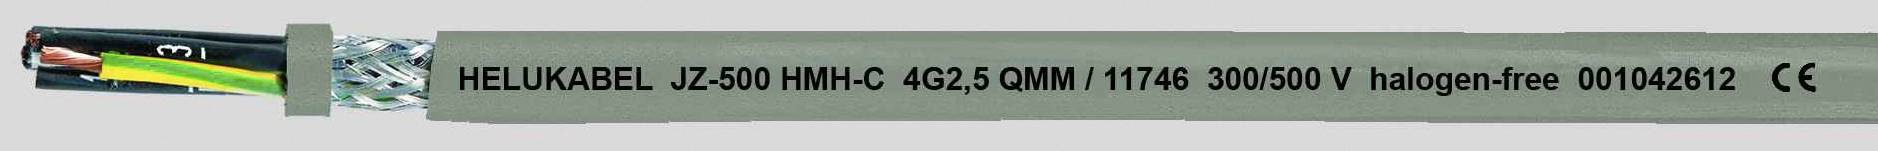 HELUKABEL JZ-500 HMH-C Steuerleitung 5 G 1 mm² Grau 11703-1000 1000 m